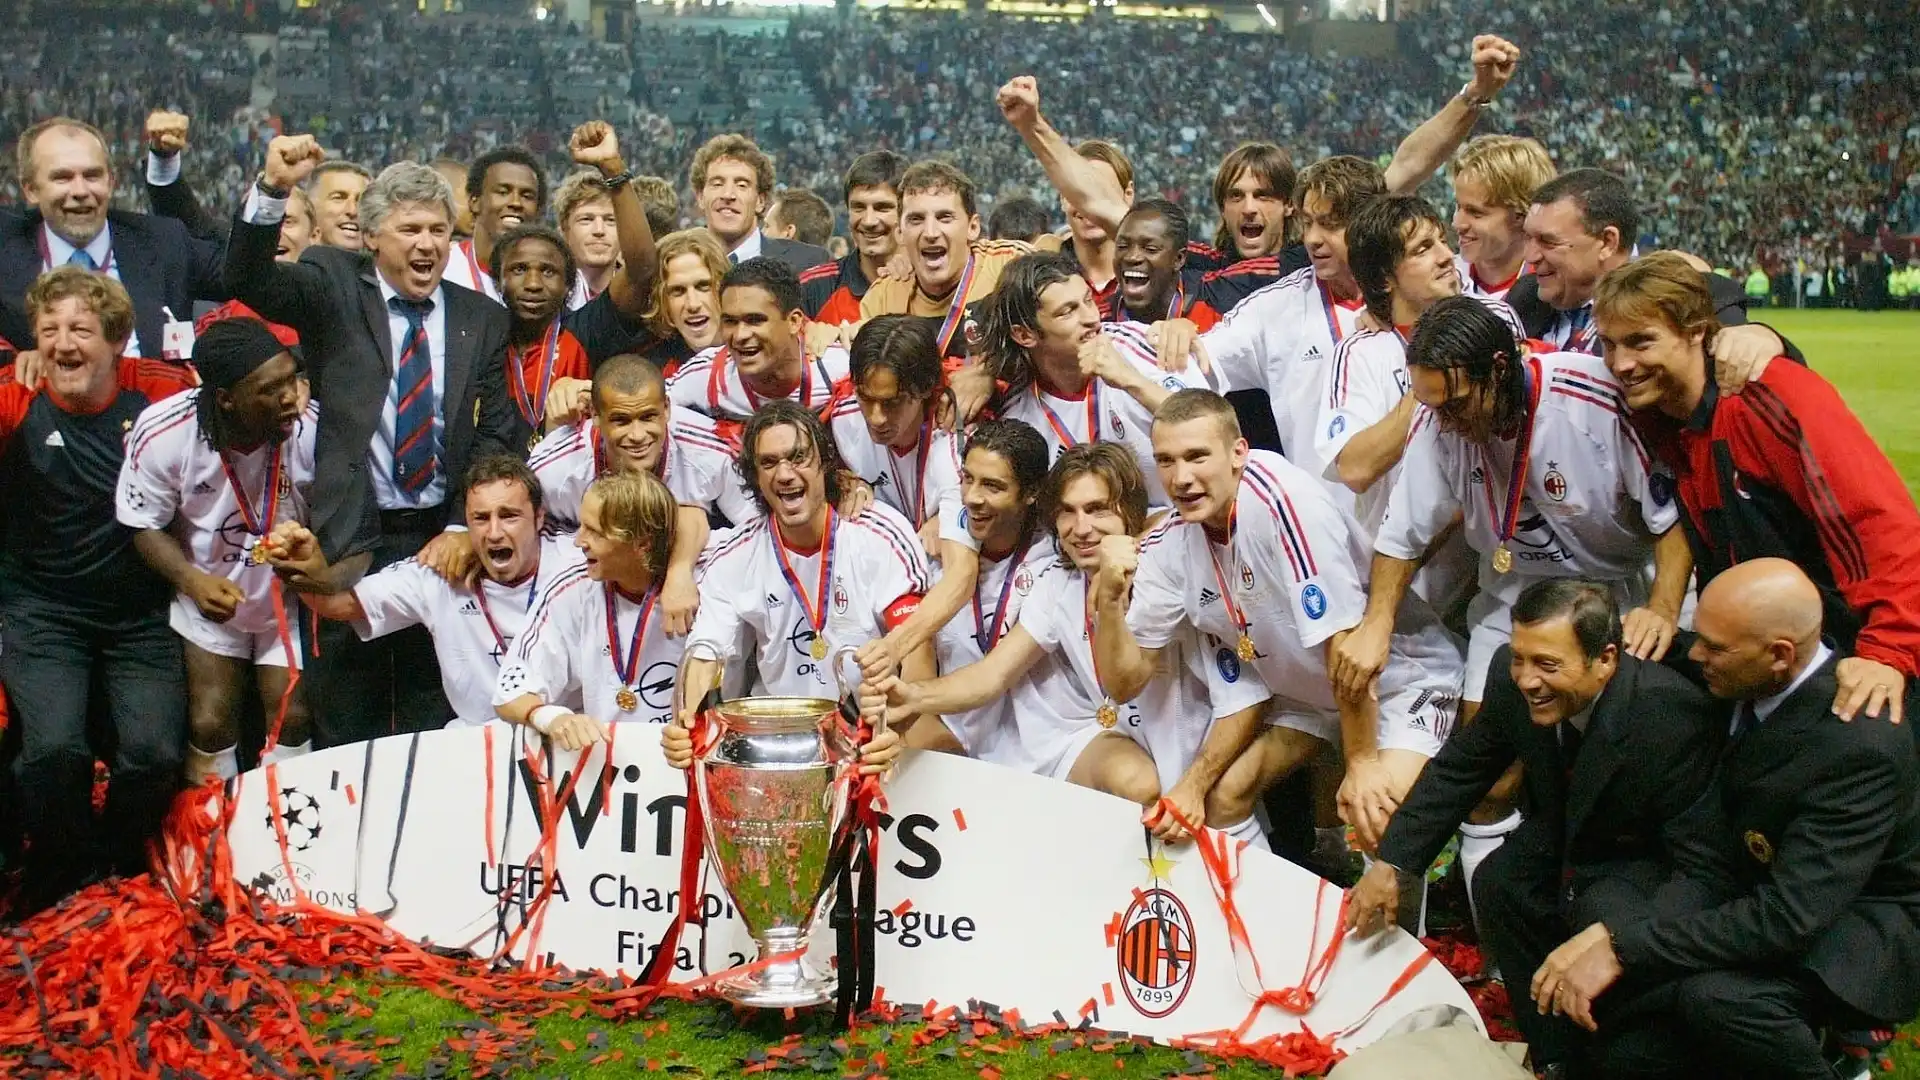 3) Milan (Italia): 18 trofei (7 Champions League, 5 Supercoppe europee, 2 Coppe delle Coppe, 3 Coppe Intercontinentali, 1 Coppa del mondo per club)